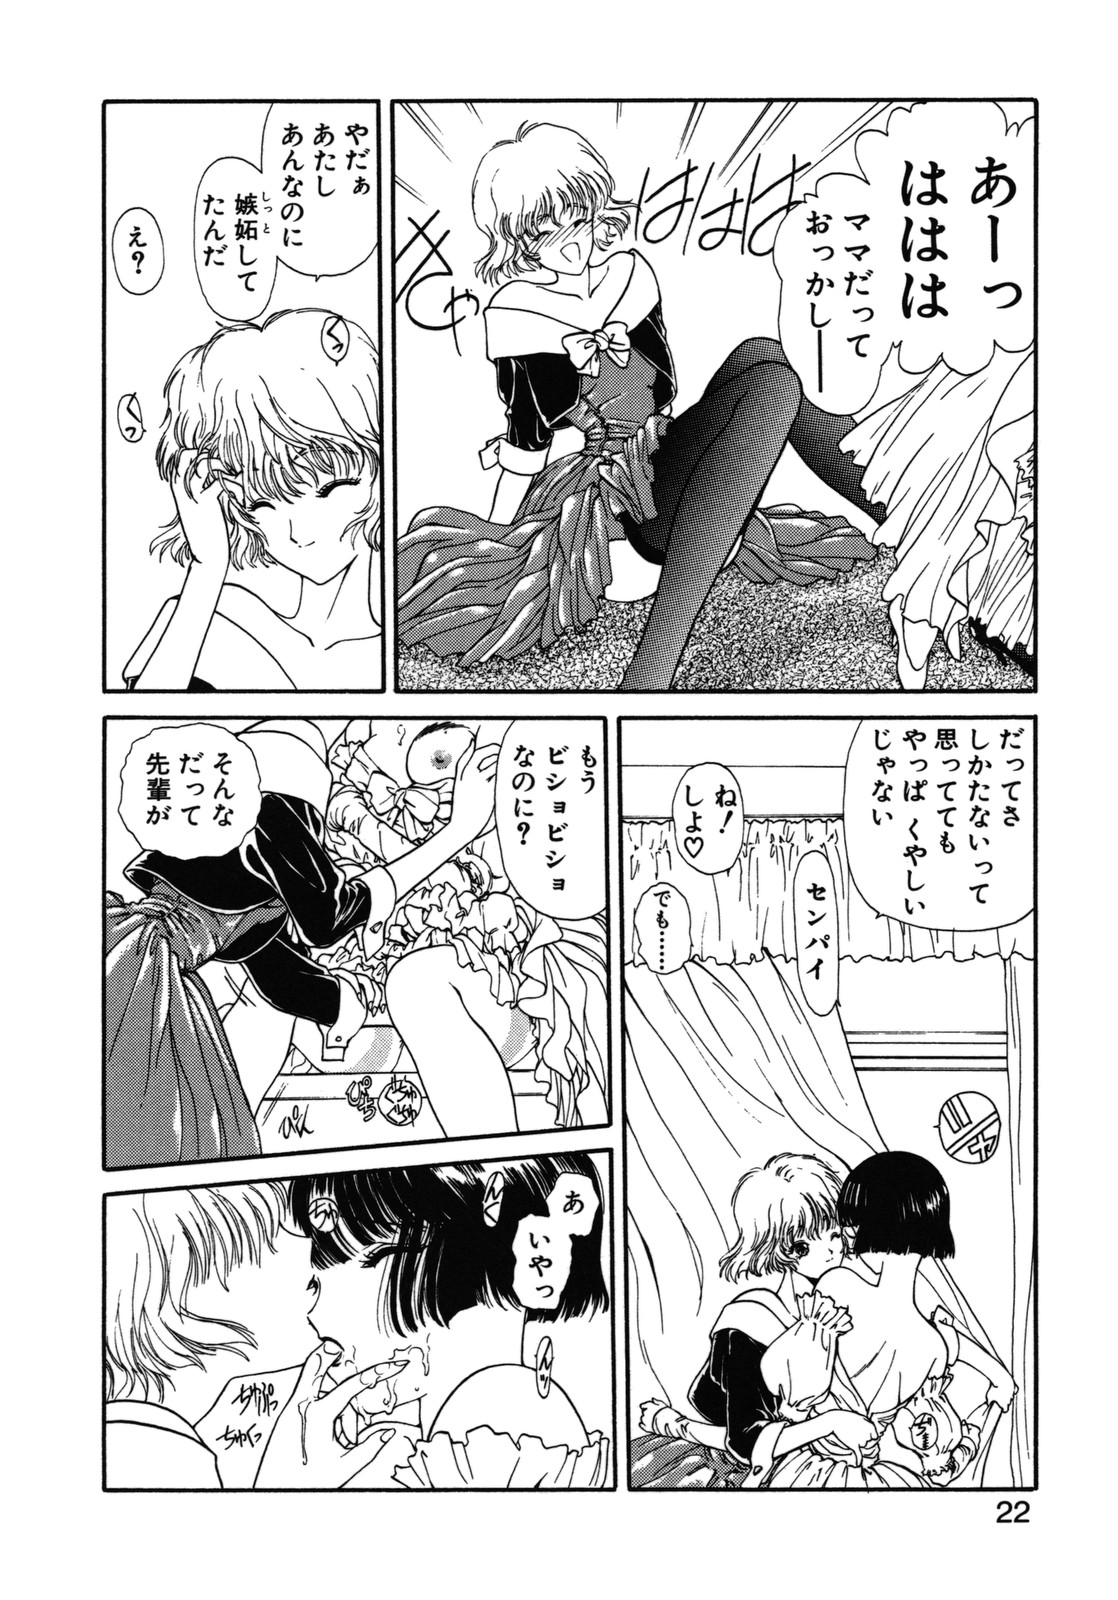 [Utatane Hiroyuki] COUNT DOWN page 23 full